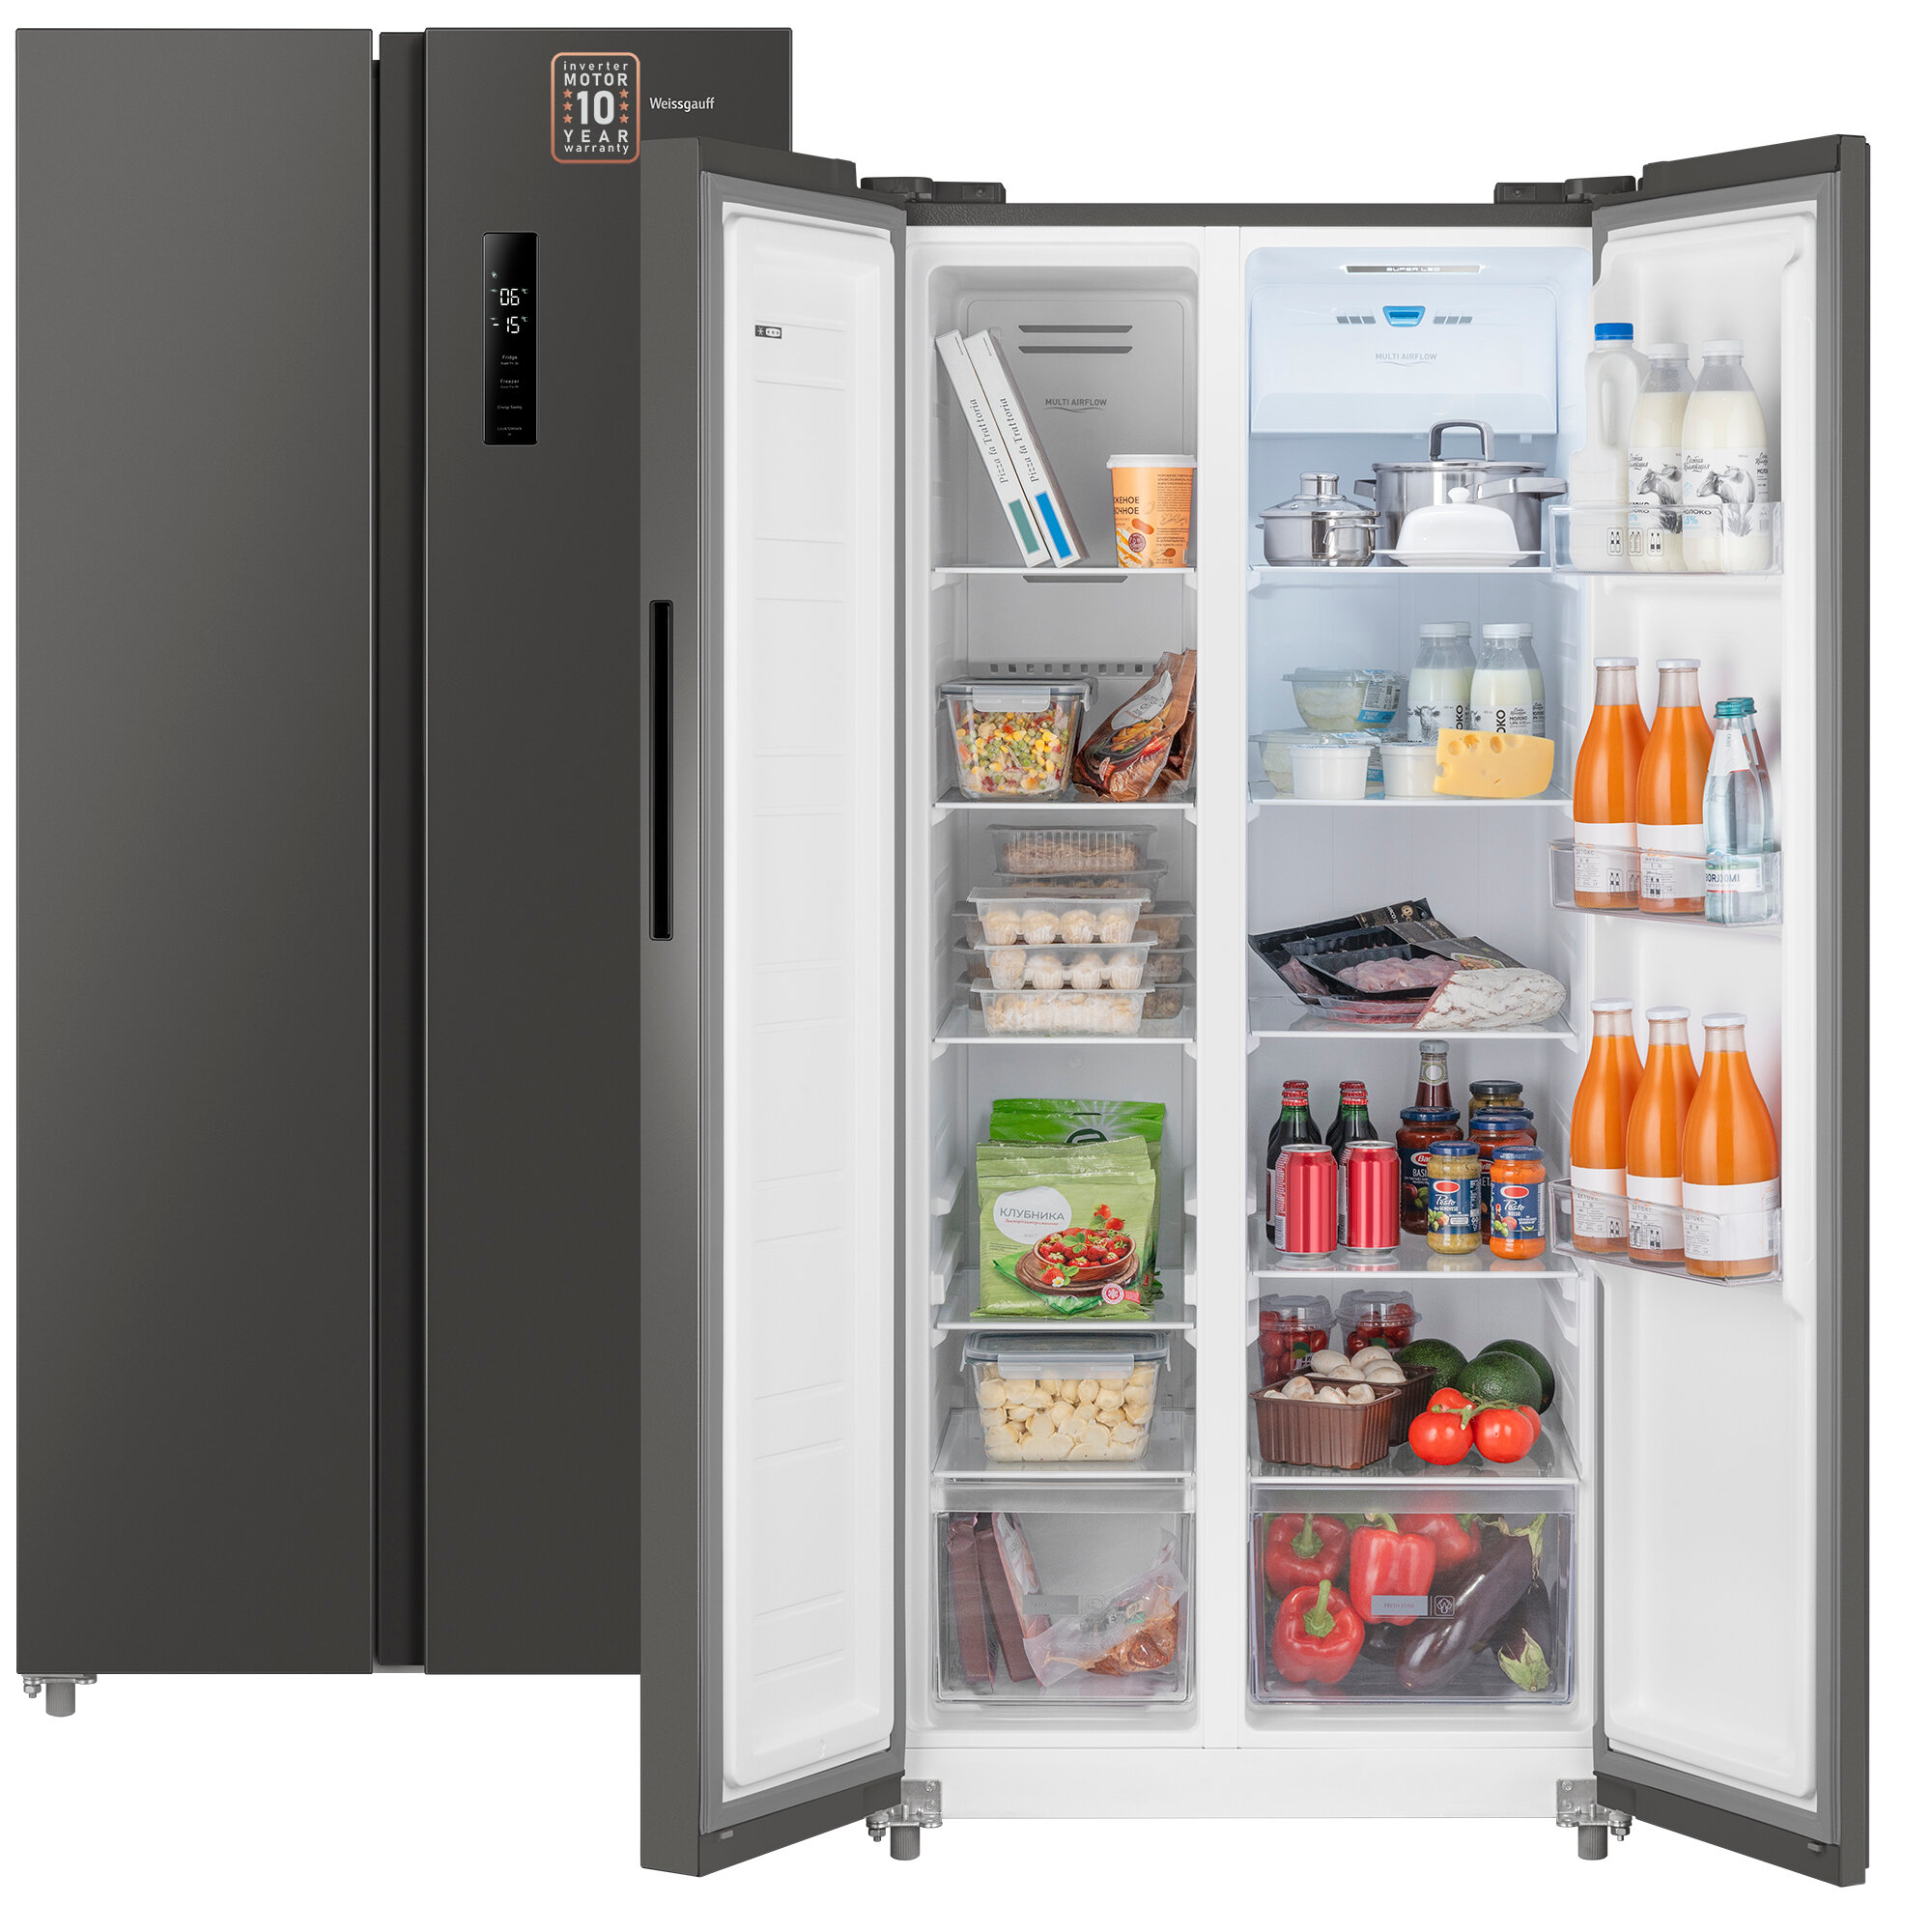 Отдельностоящий холодильник с инвертором Weissgauff WSBS 500 Inverter NoFrost Dark Grey Side by Side двухдверный, 3 года гарантии, Мощность замораживания 12 кг сутки, Сенсорное управление, Цифровой дисплей, LED освещение, Большой общий объём 500 л